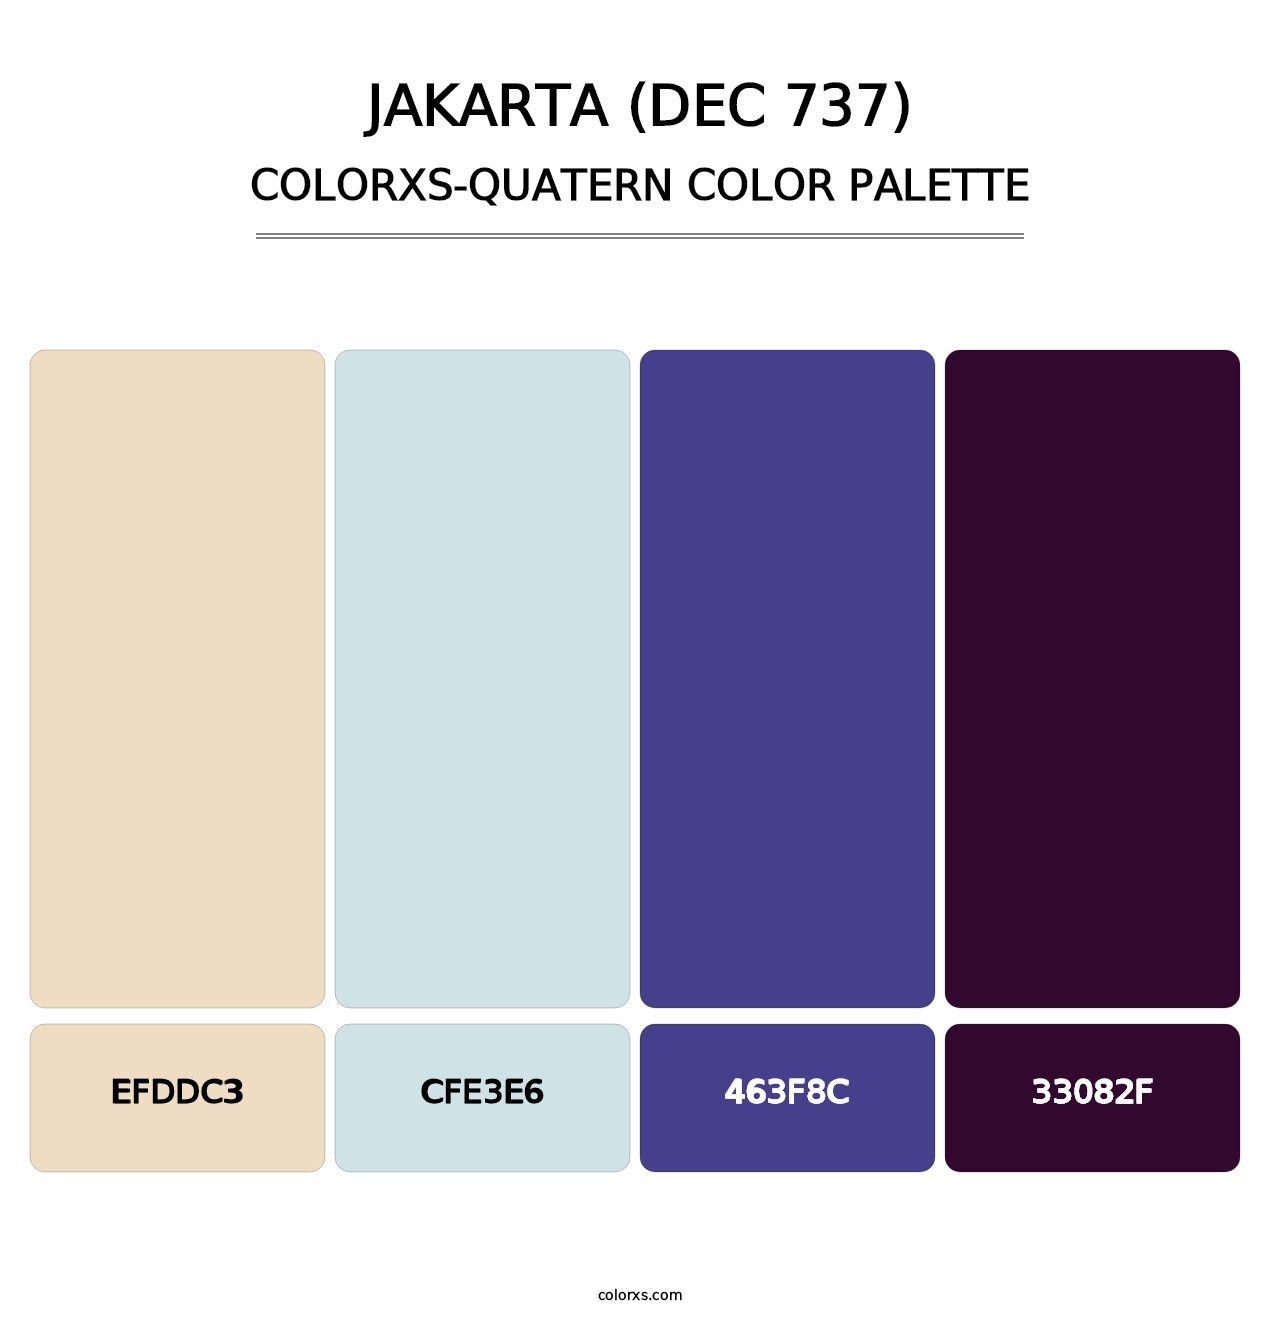 Jakarta (DEC 737) - Colorxs Quatern Palette